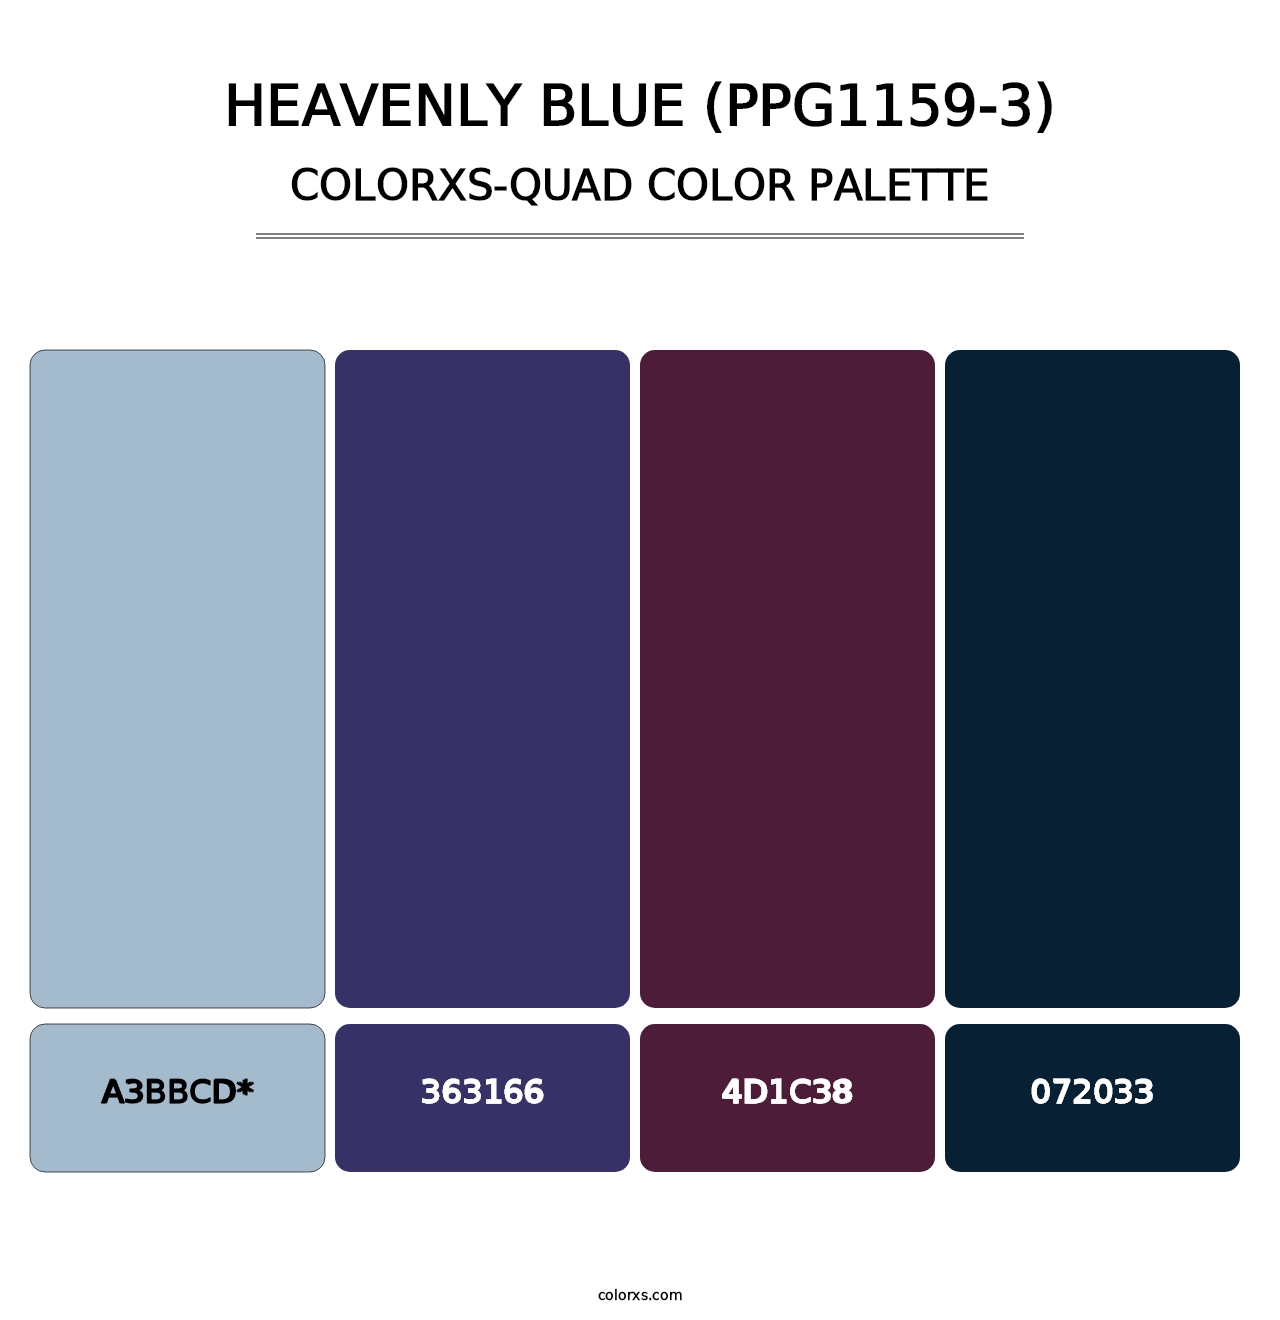 Heavenly Blue (PPG1159-3) - Colorxs Quad Palette